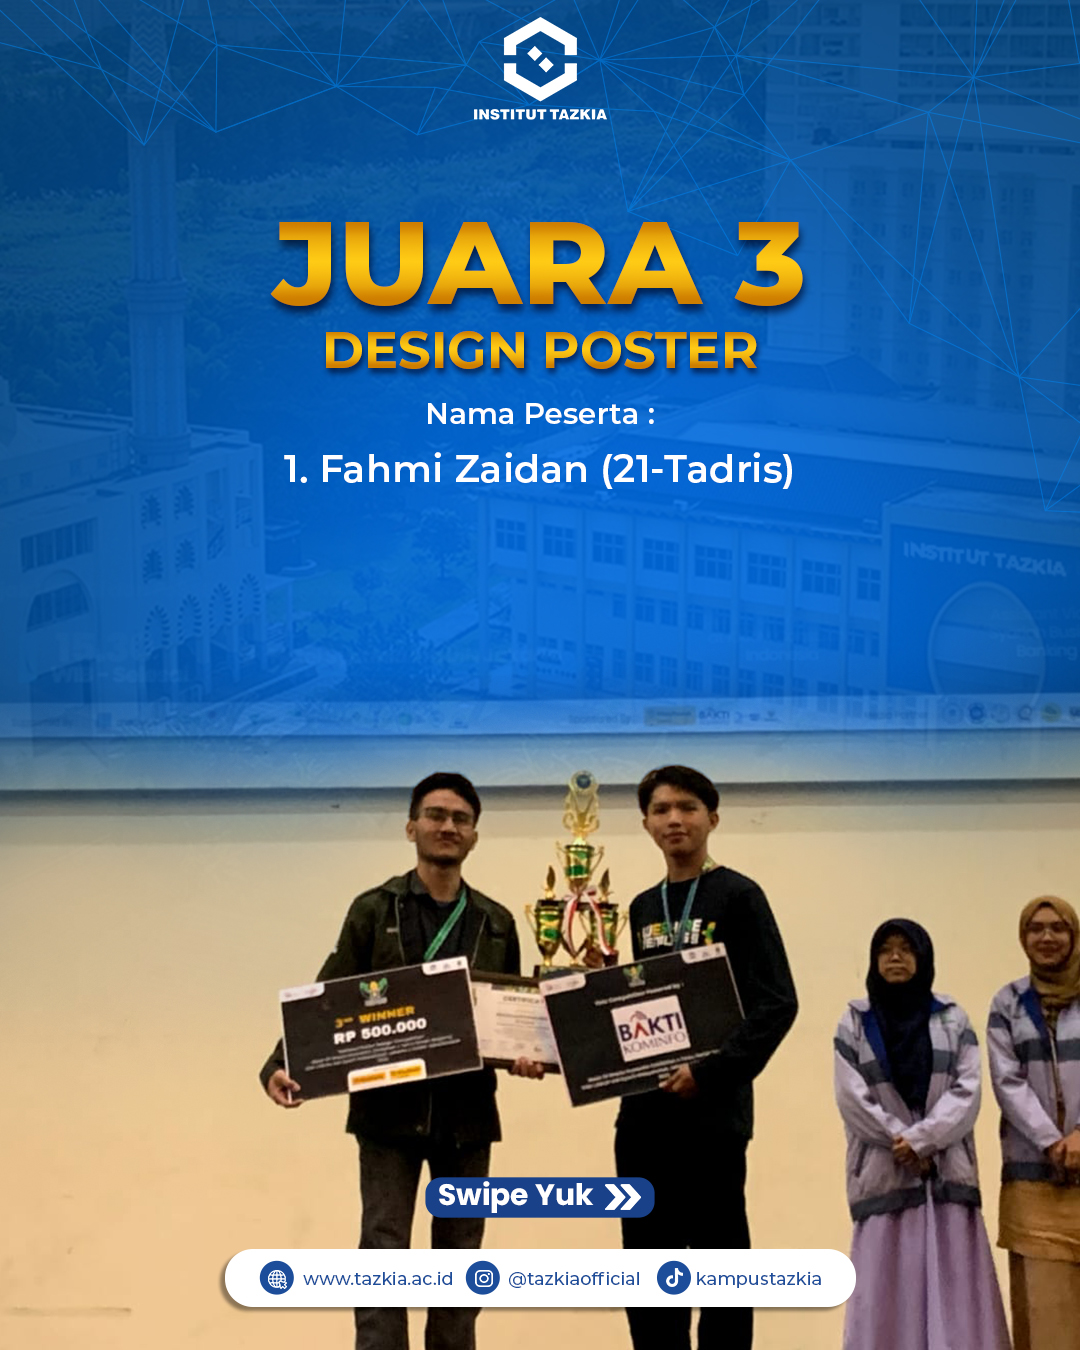 Juara 3 Design Poster